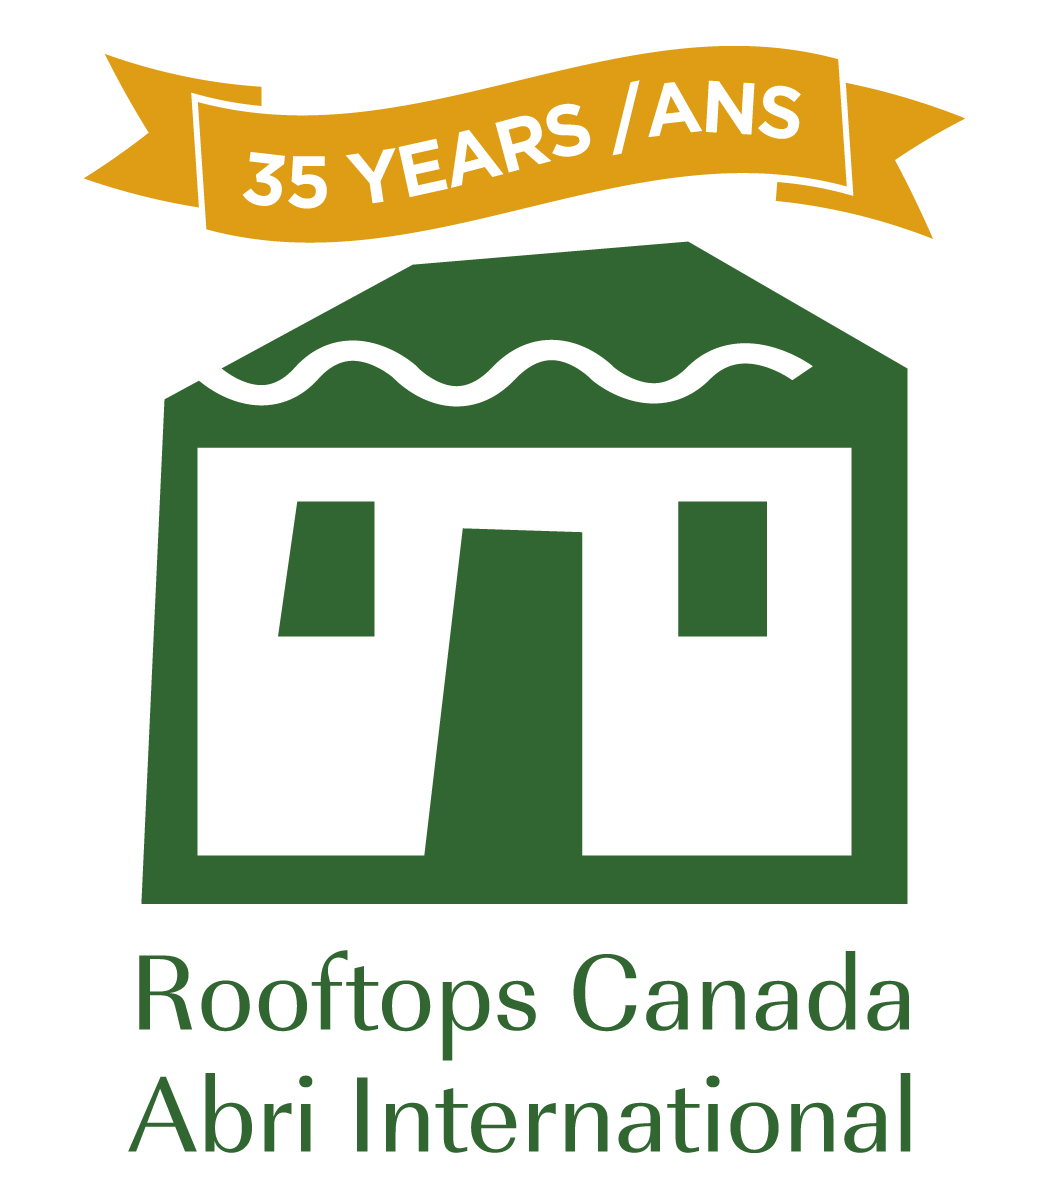 Rooftops Canada / Abri International logo